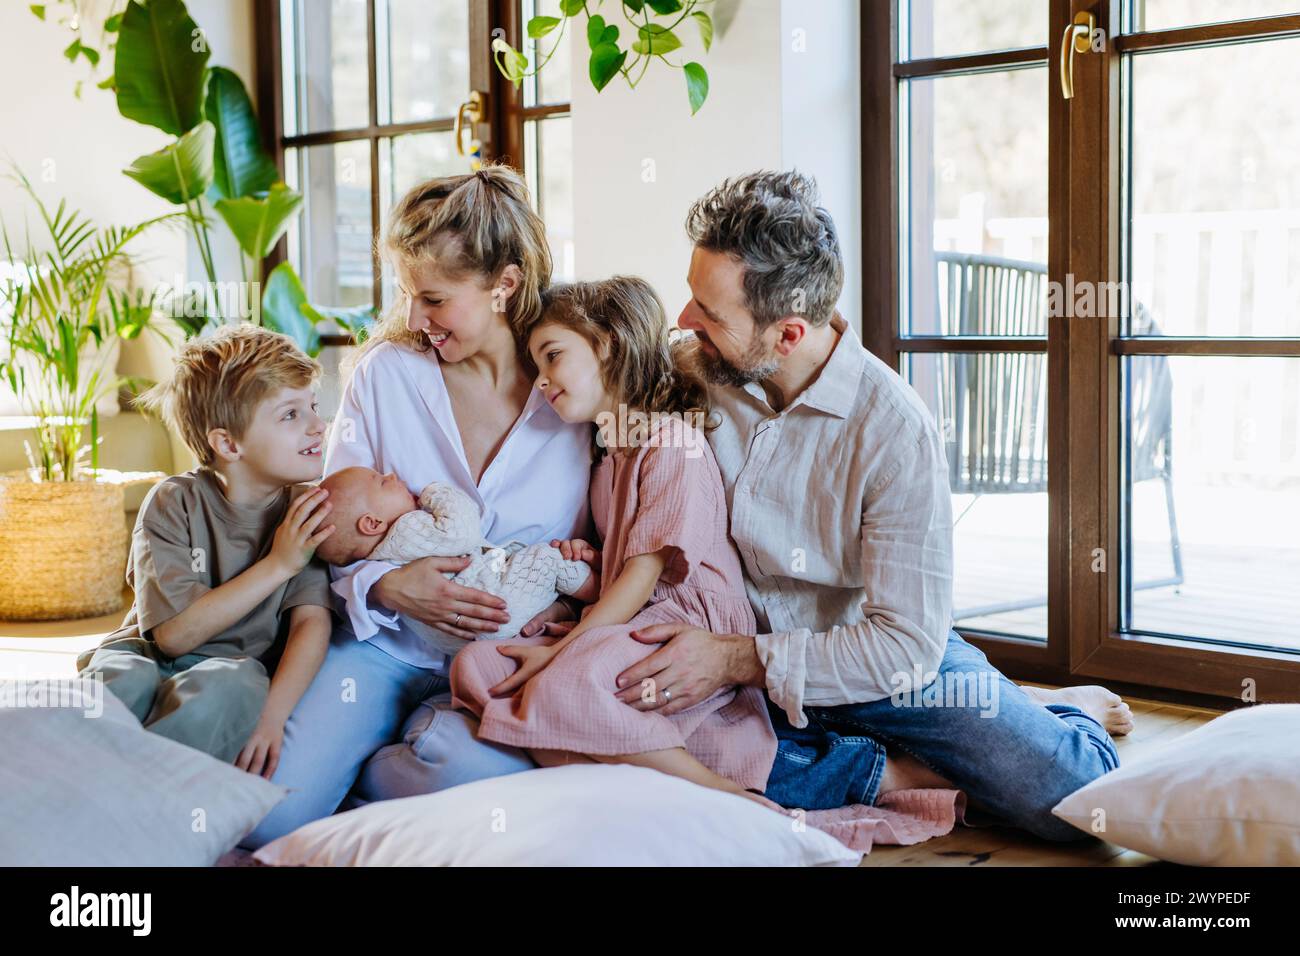 Ritratto di famiglia nucleare con neonato. Momento perfetto. Famiglia forte, legame, amore incondizionato dei genitori per i loro figli. Foto Stock